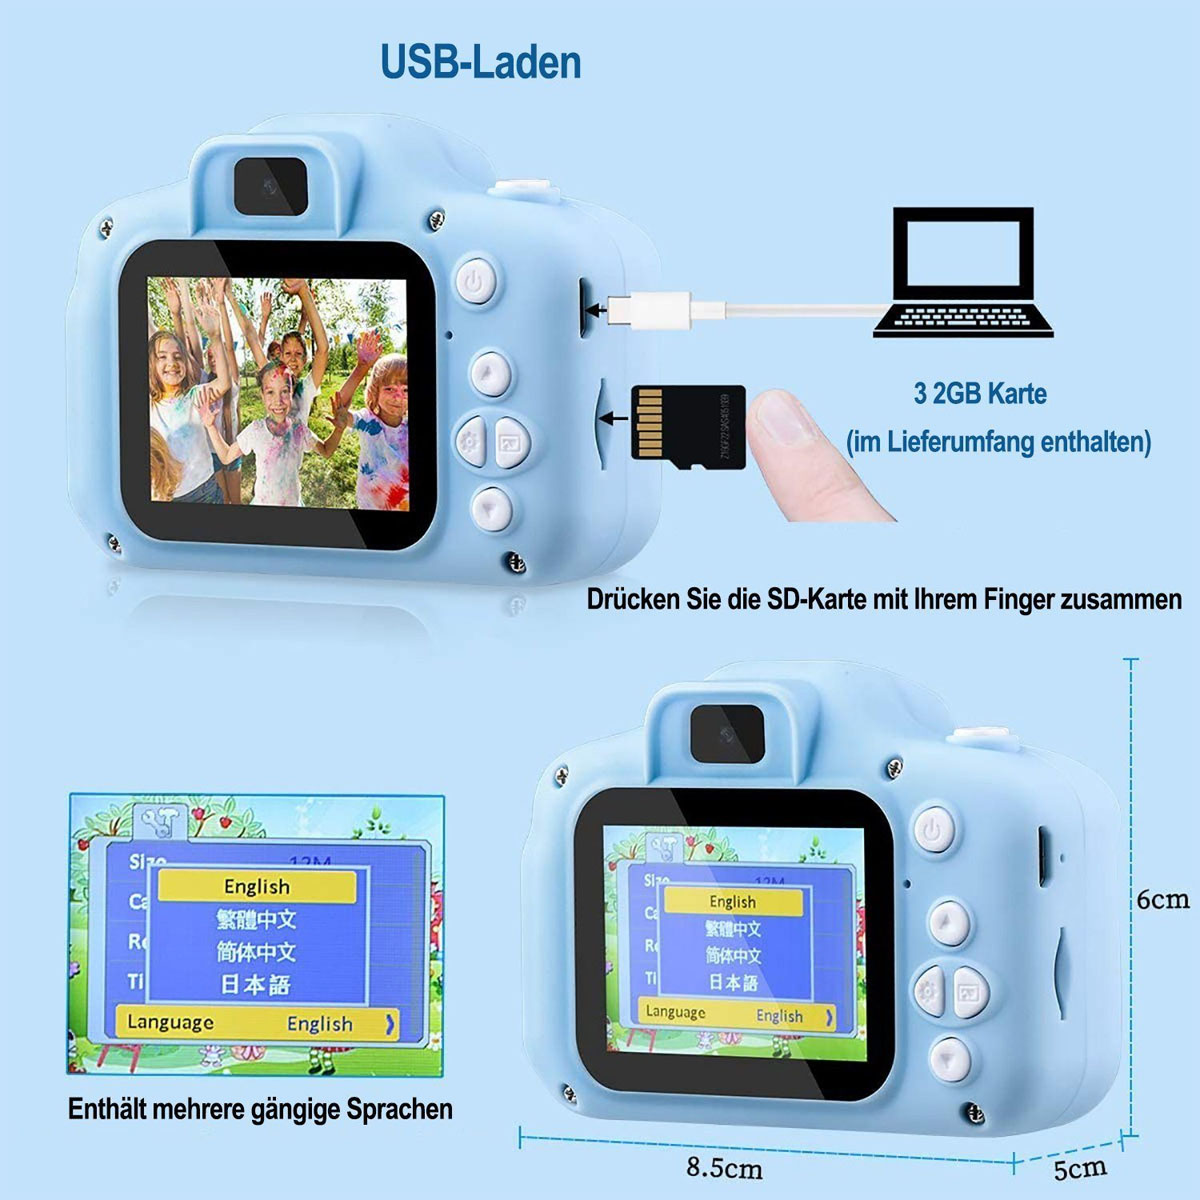 Kinder KINSI Kamera,Spielzeug-Kamera, Kinderkamera Megapixel, 20 32GB LCD Blaue Kinderkamera,